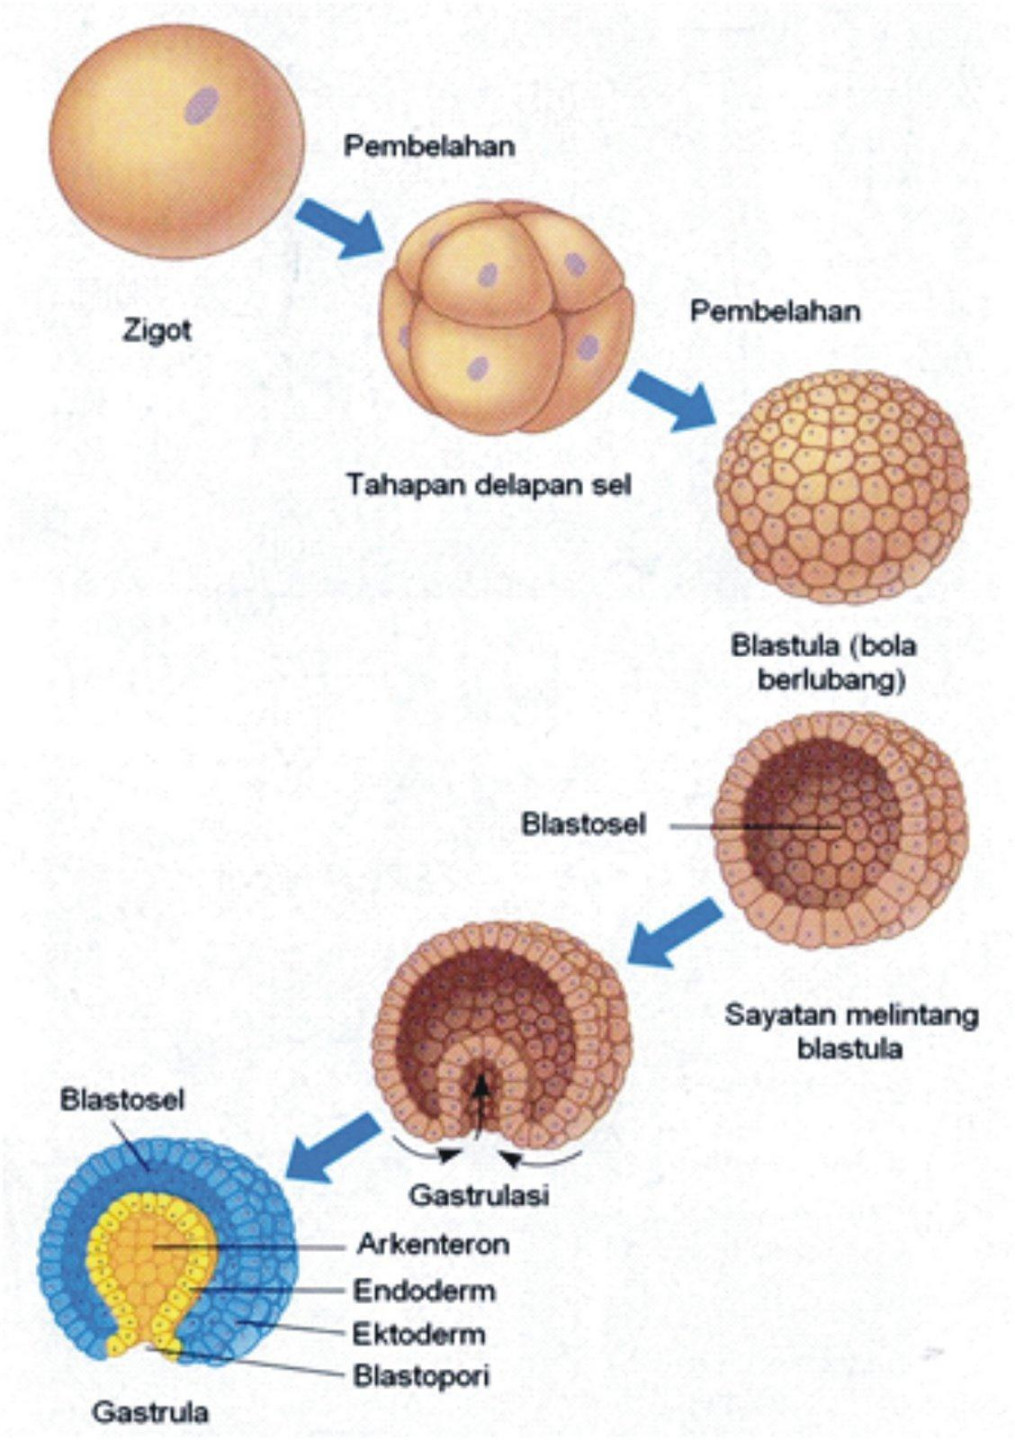 apa yang dimaksud dengan morula,blastula,dan gastrula? - Brainly.co